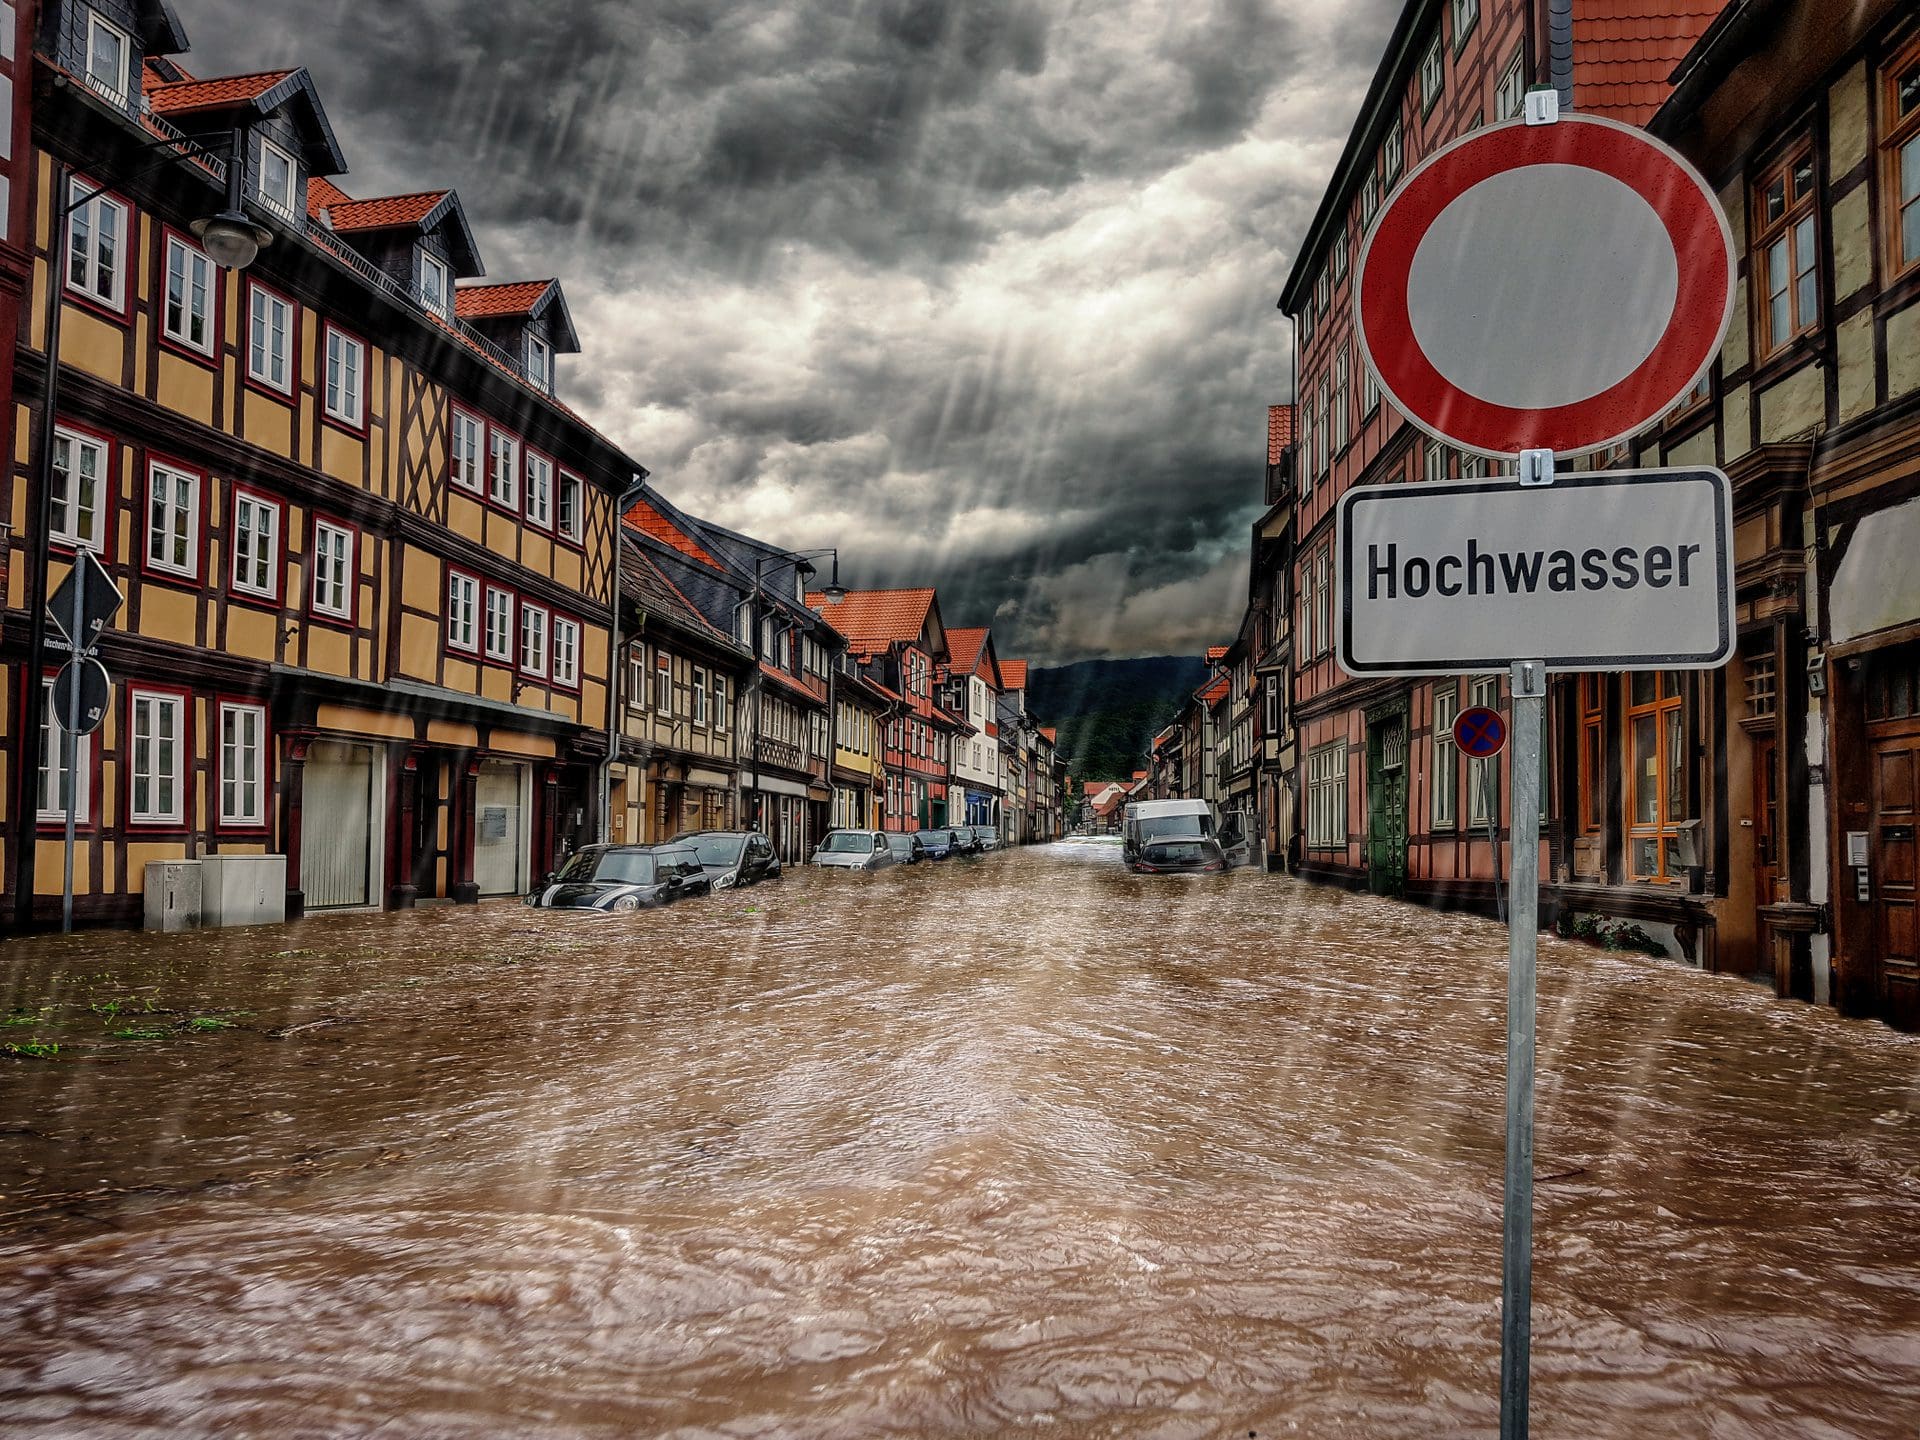 Hochwasser in der Stadt - Bleibt zu hoffen, dass die Hausbesitzer Schäden durch Überschwemmung gut genug versichert haben (© ferkelraggae / stock.adobe.com)